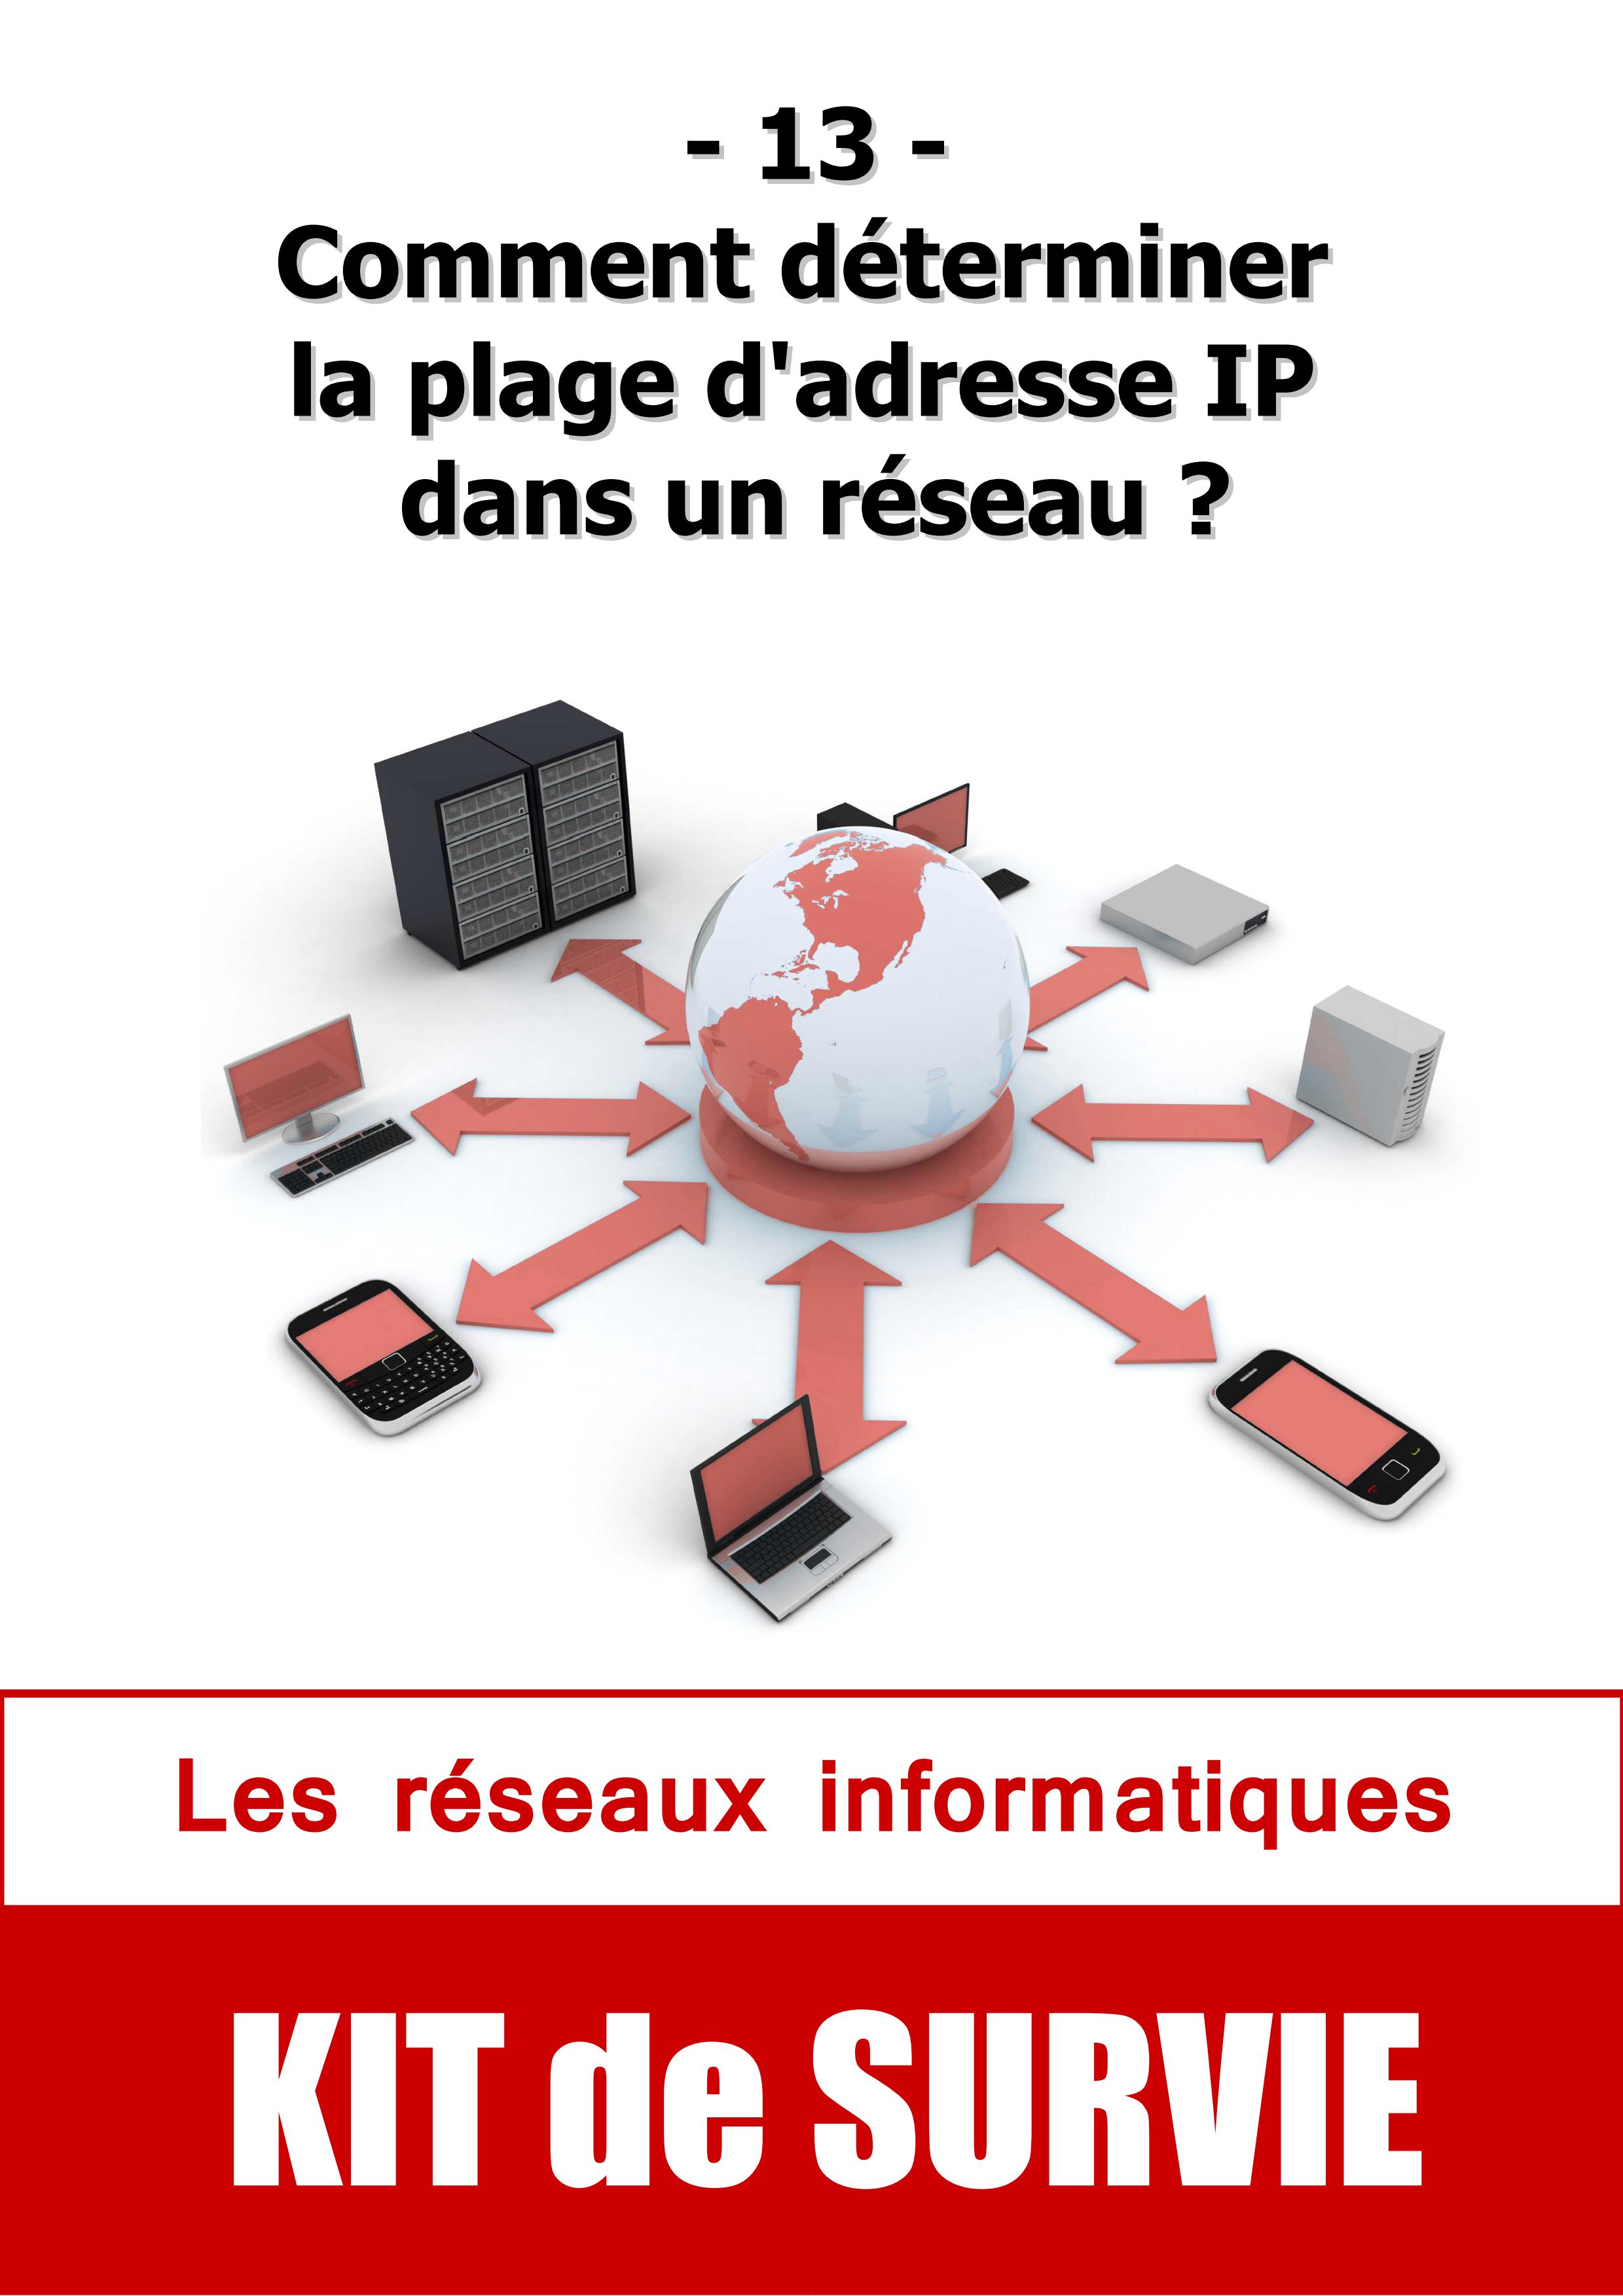 #13. Comment déterminer la plage d'adresse IP dans un réseau ?